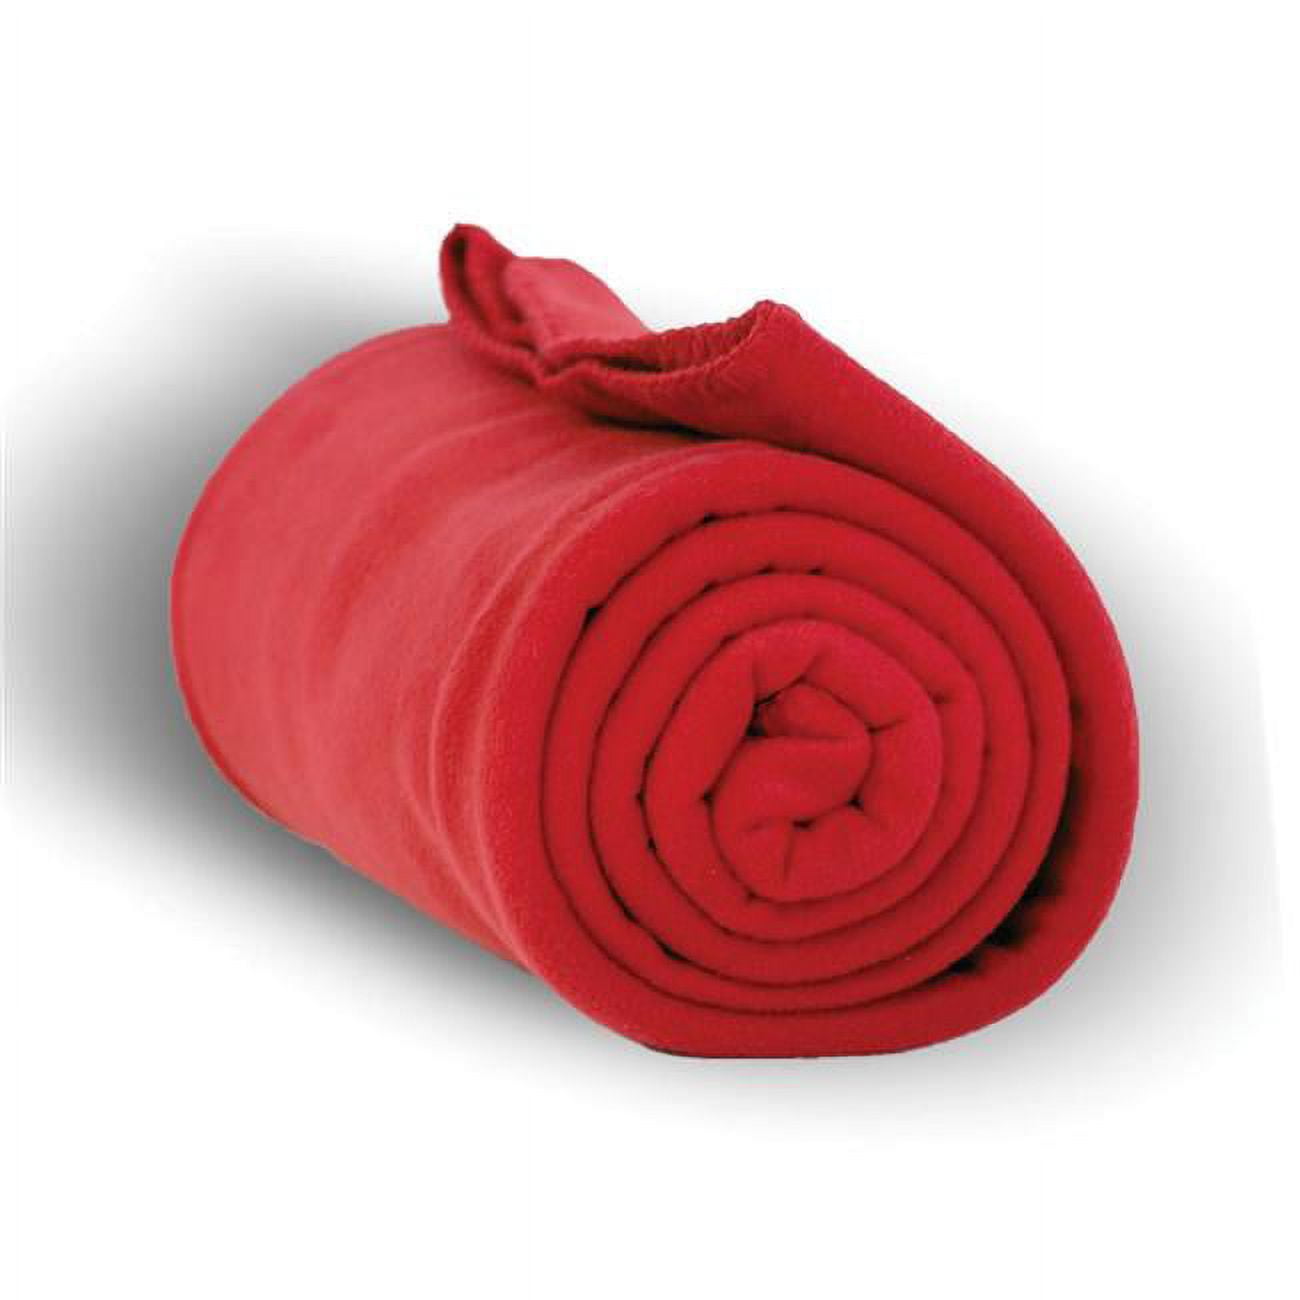 50 X 60 In. Heavy Weight Fleece Blanket Throw, Red - Case Of 24